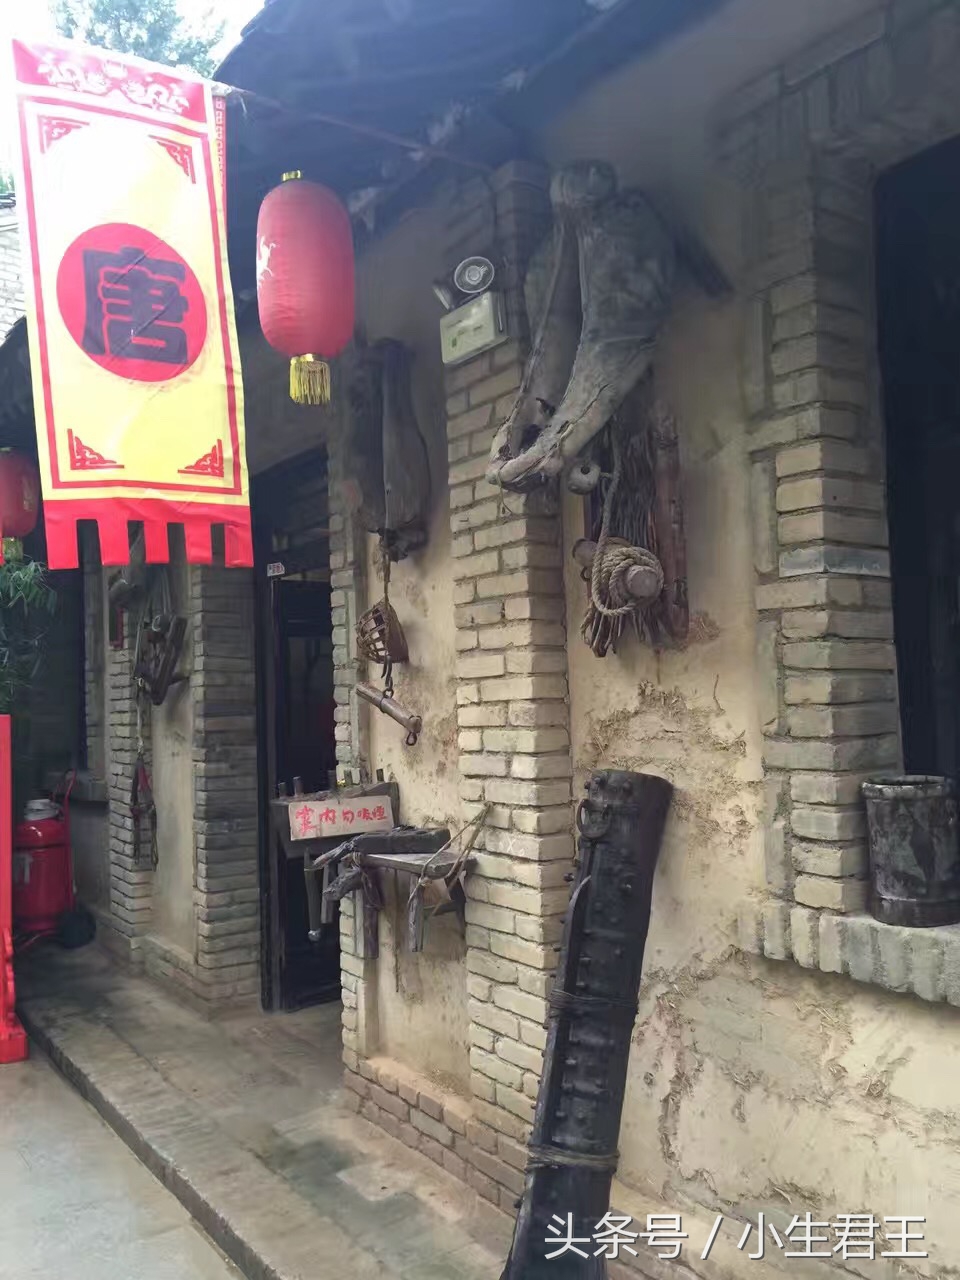 大唐西行的第一驿站马嵬驿，如今成了民俗文化村，来过就忘不了